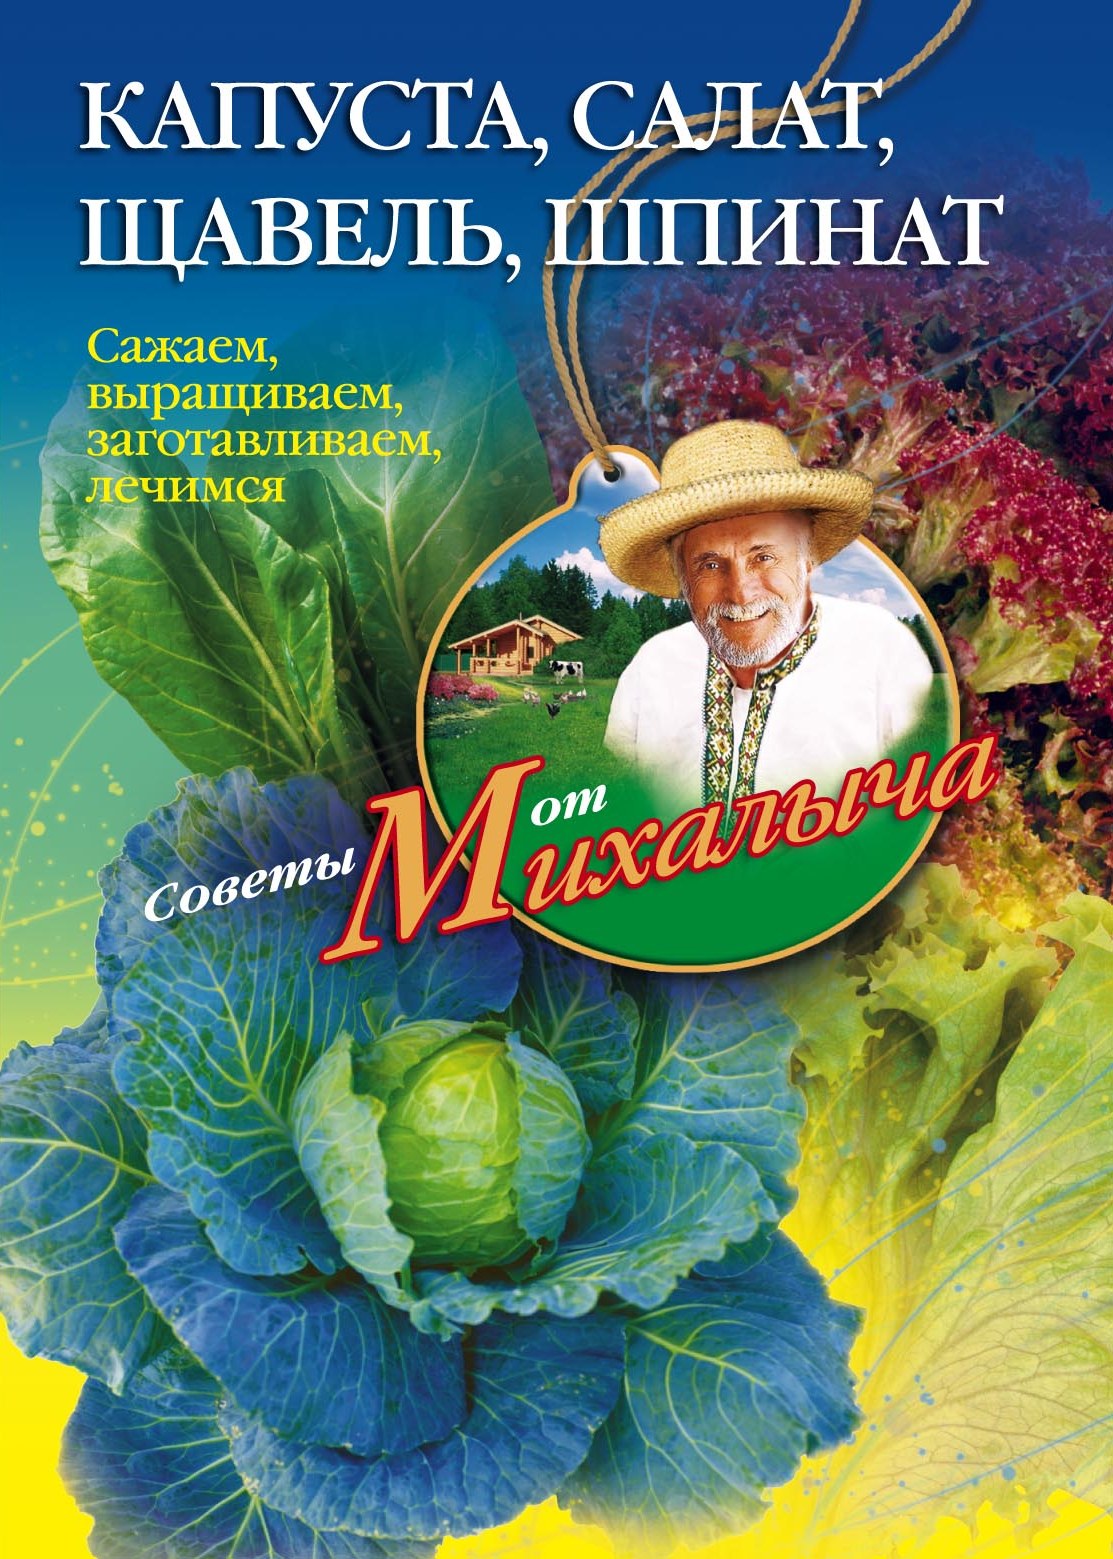 Николай Звонарев - «Капуста, салат, щавель, шпинат. Сажаем, выращиваем, заготавливаем, лечимся»